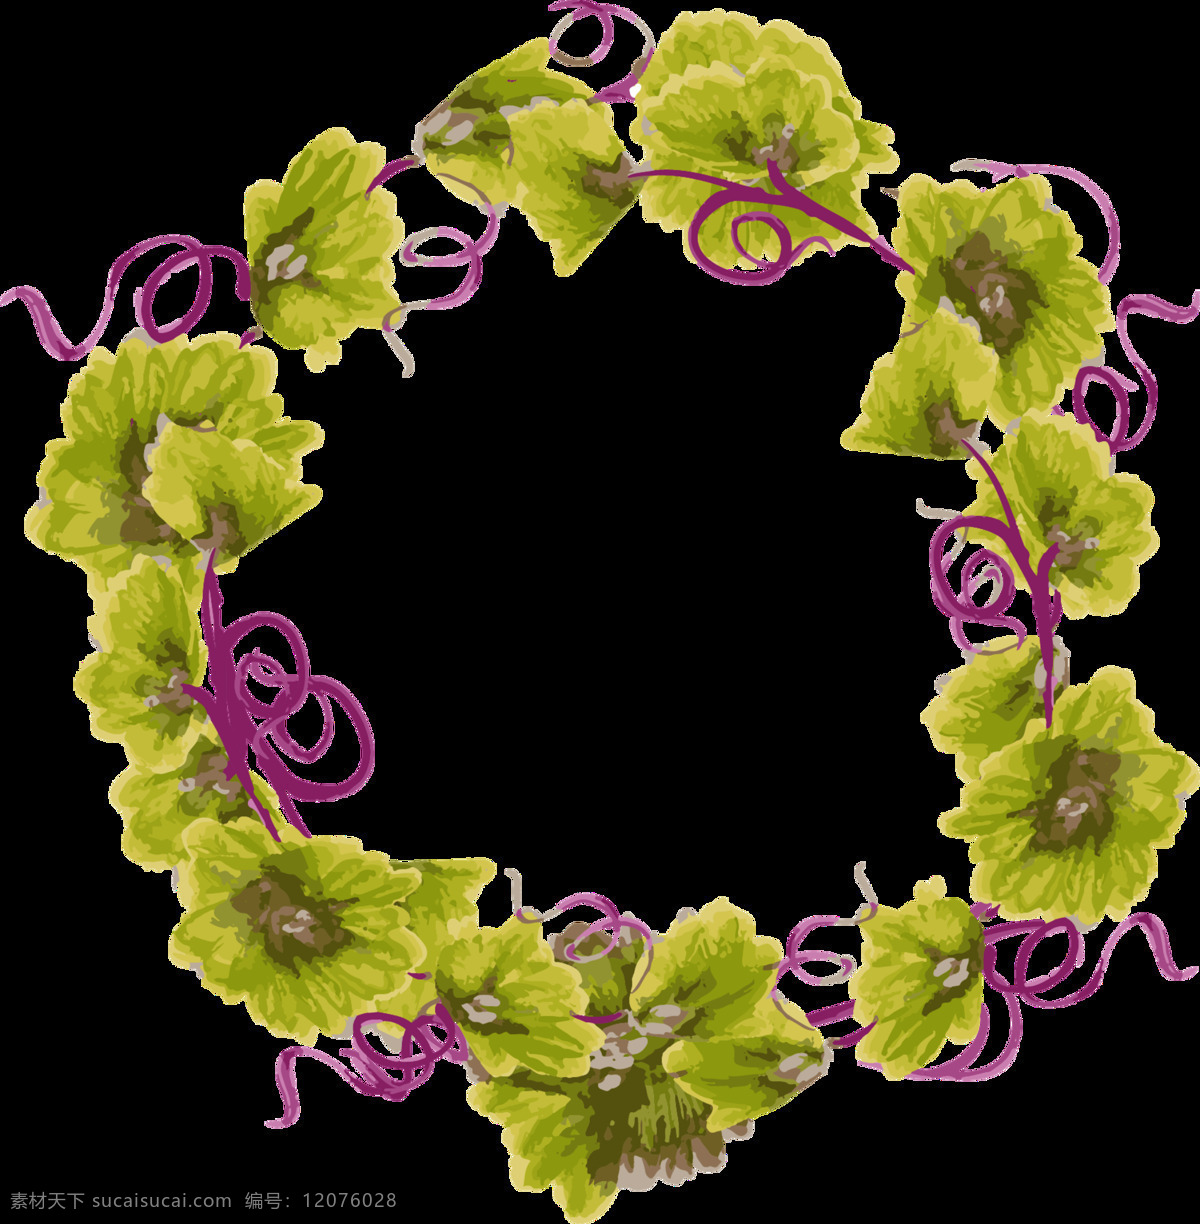 浪漫 土黄色 花朵 手绘 花环 装饰 元素 花瓣 花环图案 深绿色花朵 紫色彩带